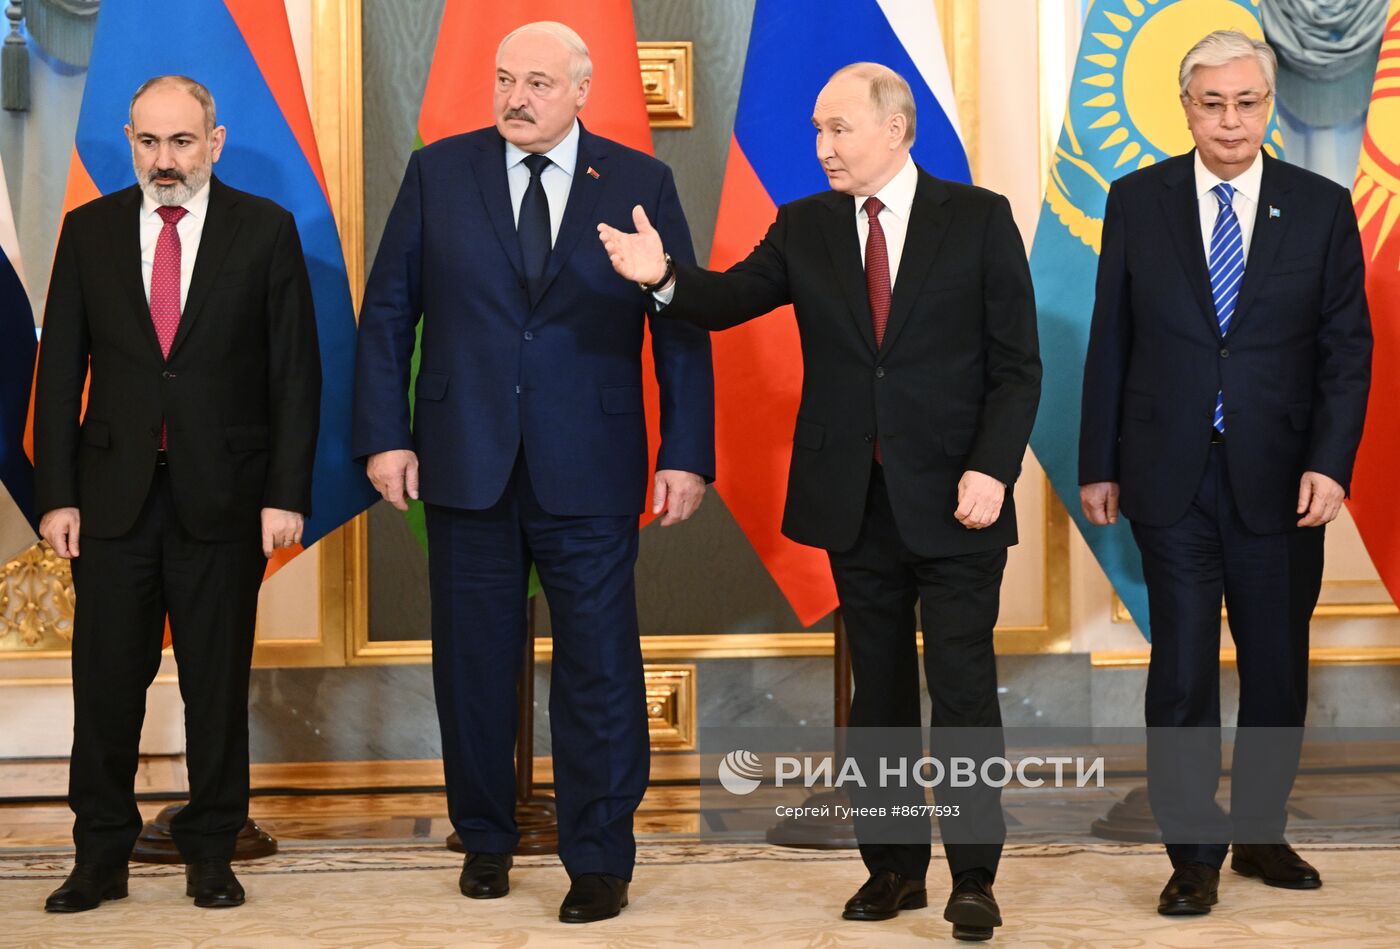 Президент России Владимир Путин принял участие в юбилейном саммите ЕАЭС в Москве